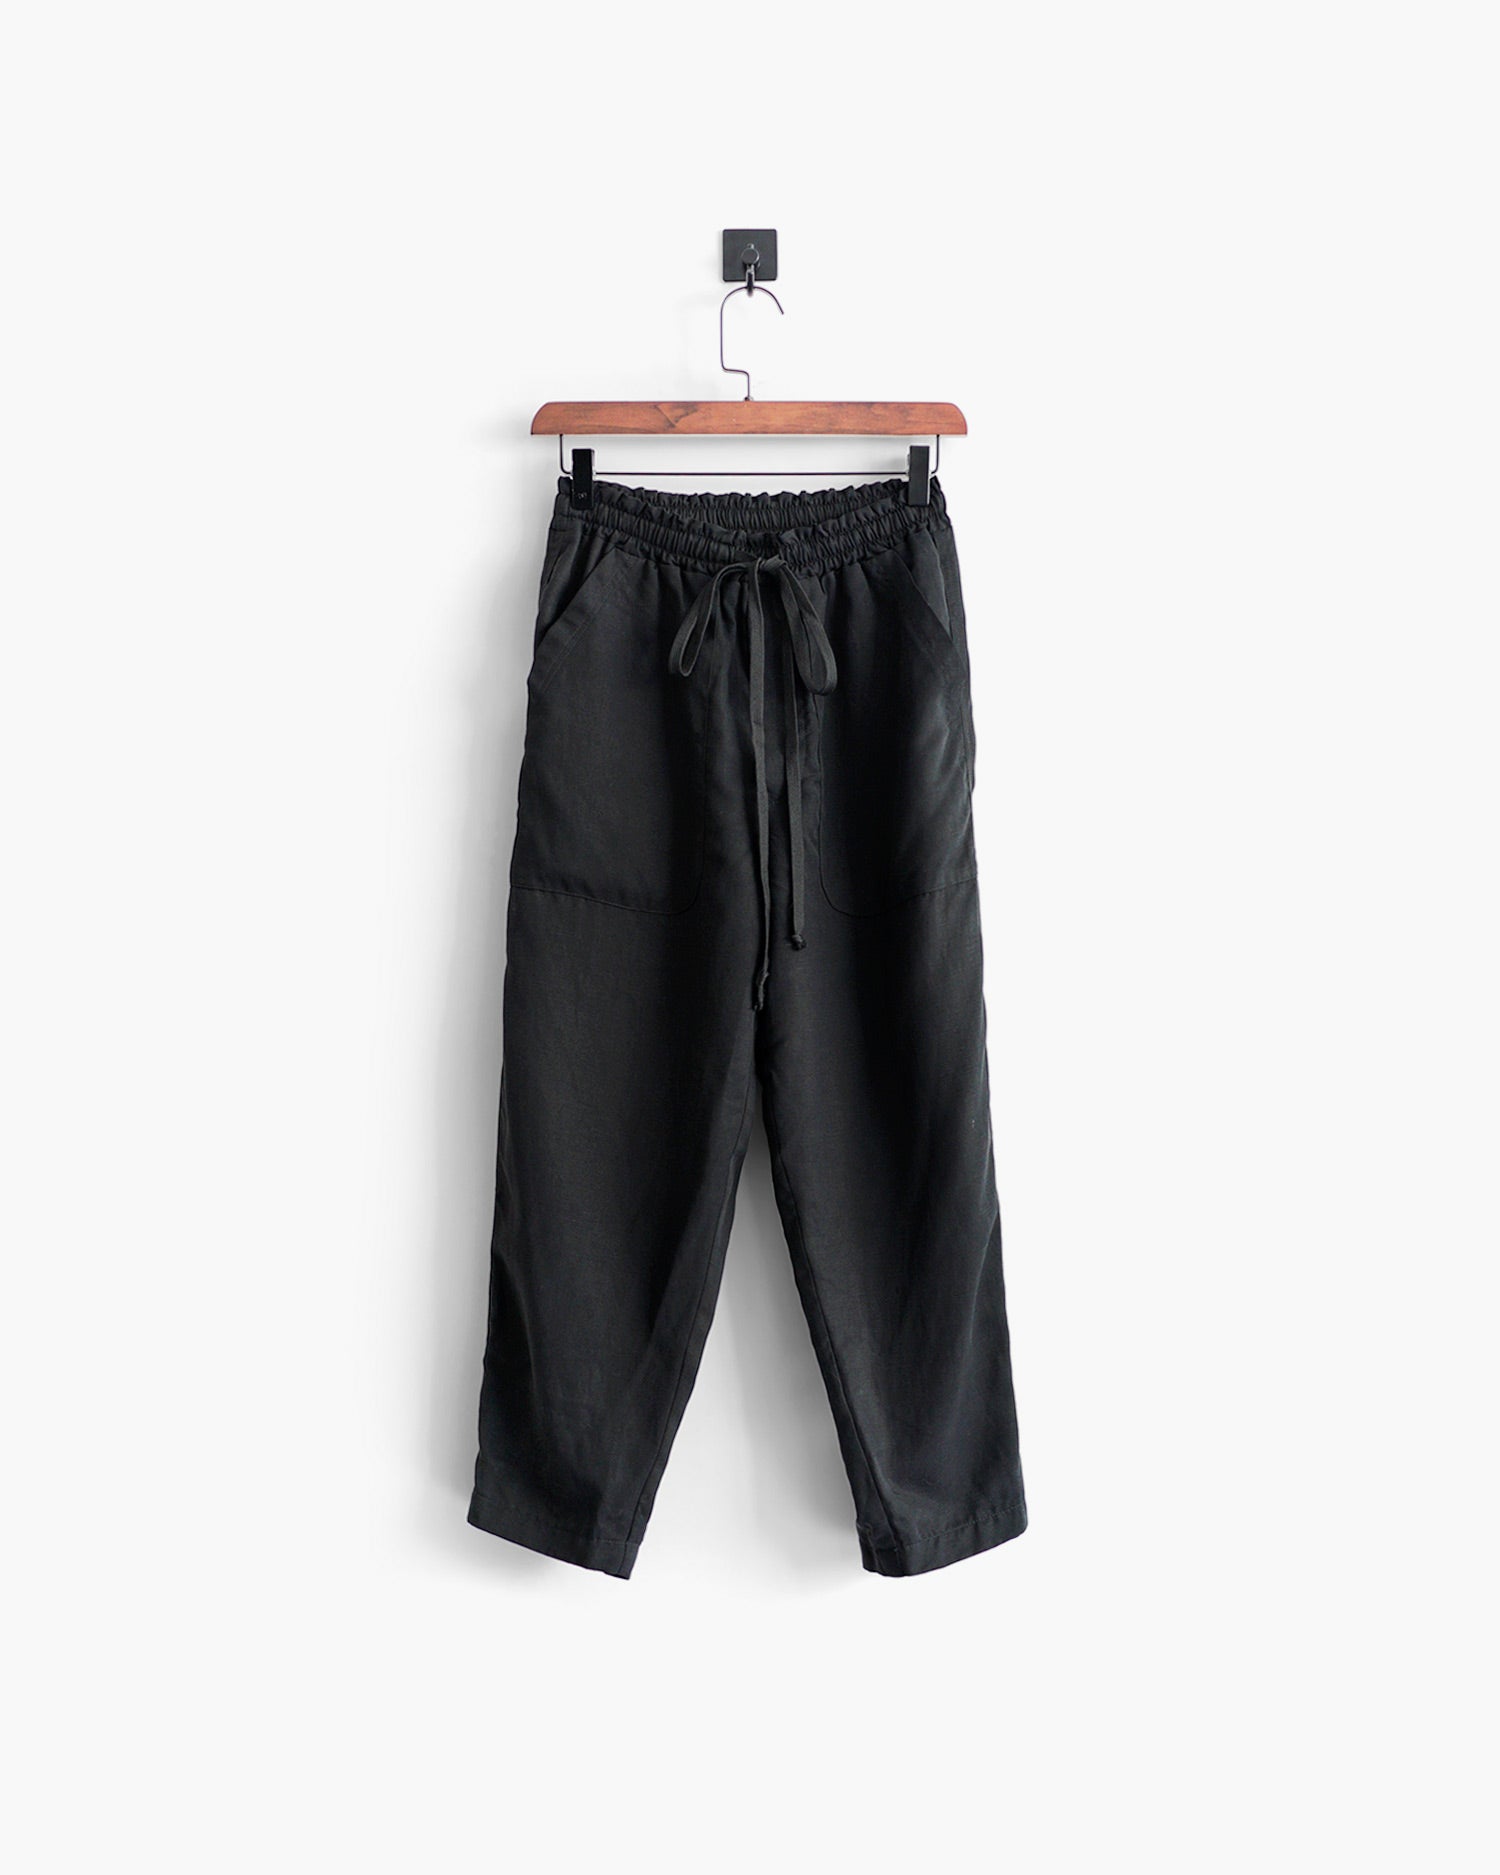 ROSEN-S Leisure Trousers - Black Silk Linen